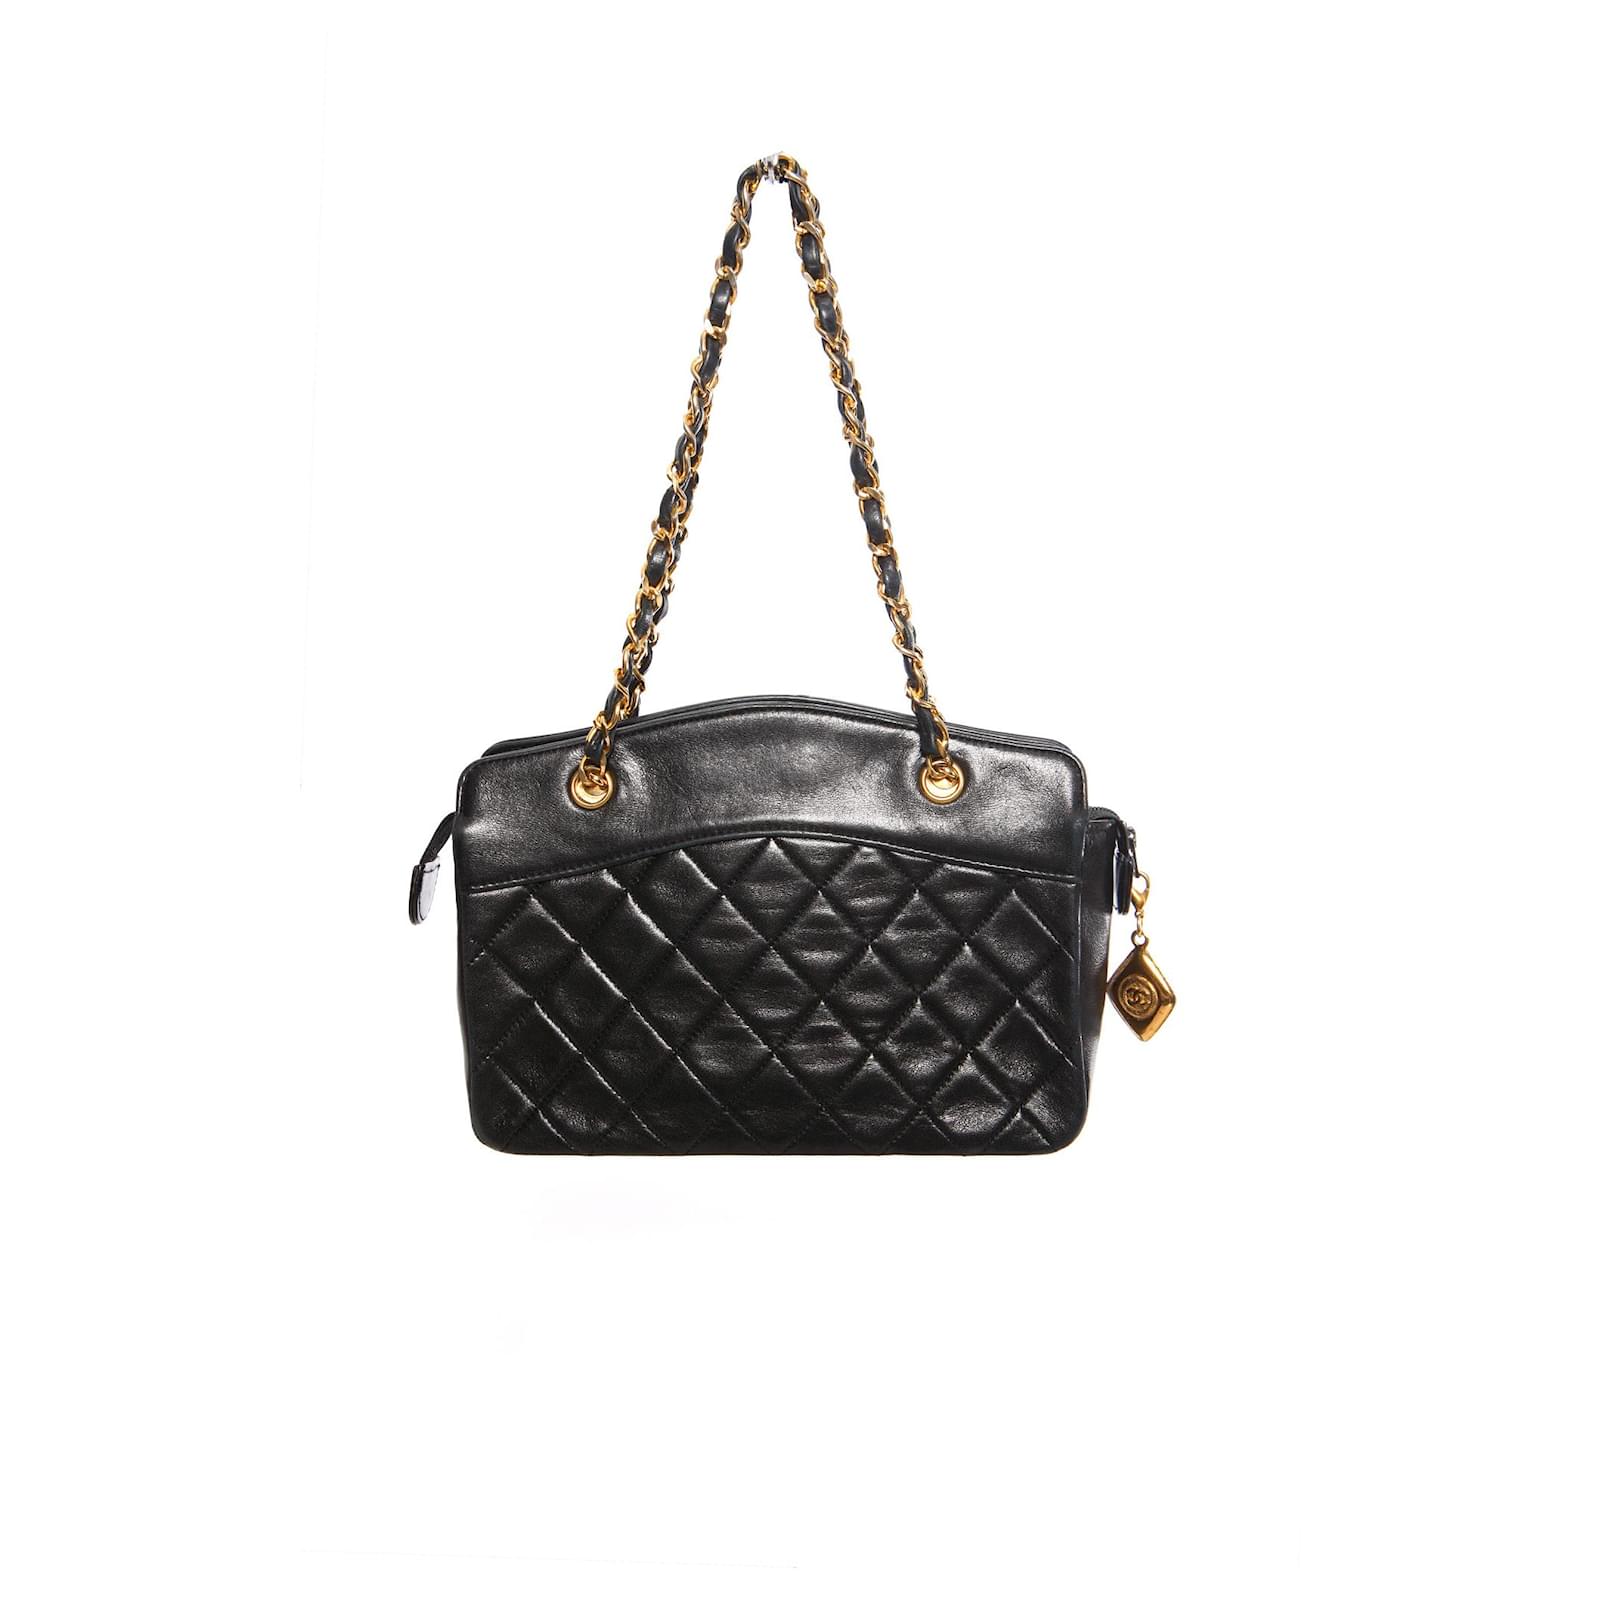 Chanel, Gesteppte Mini-Handtasche aus schwarzem Lammleder im Vintage-Stil  mit goldenen Beschlägen.